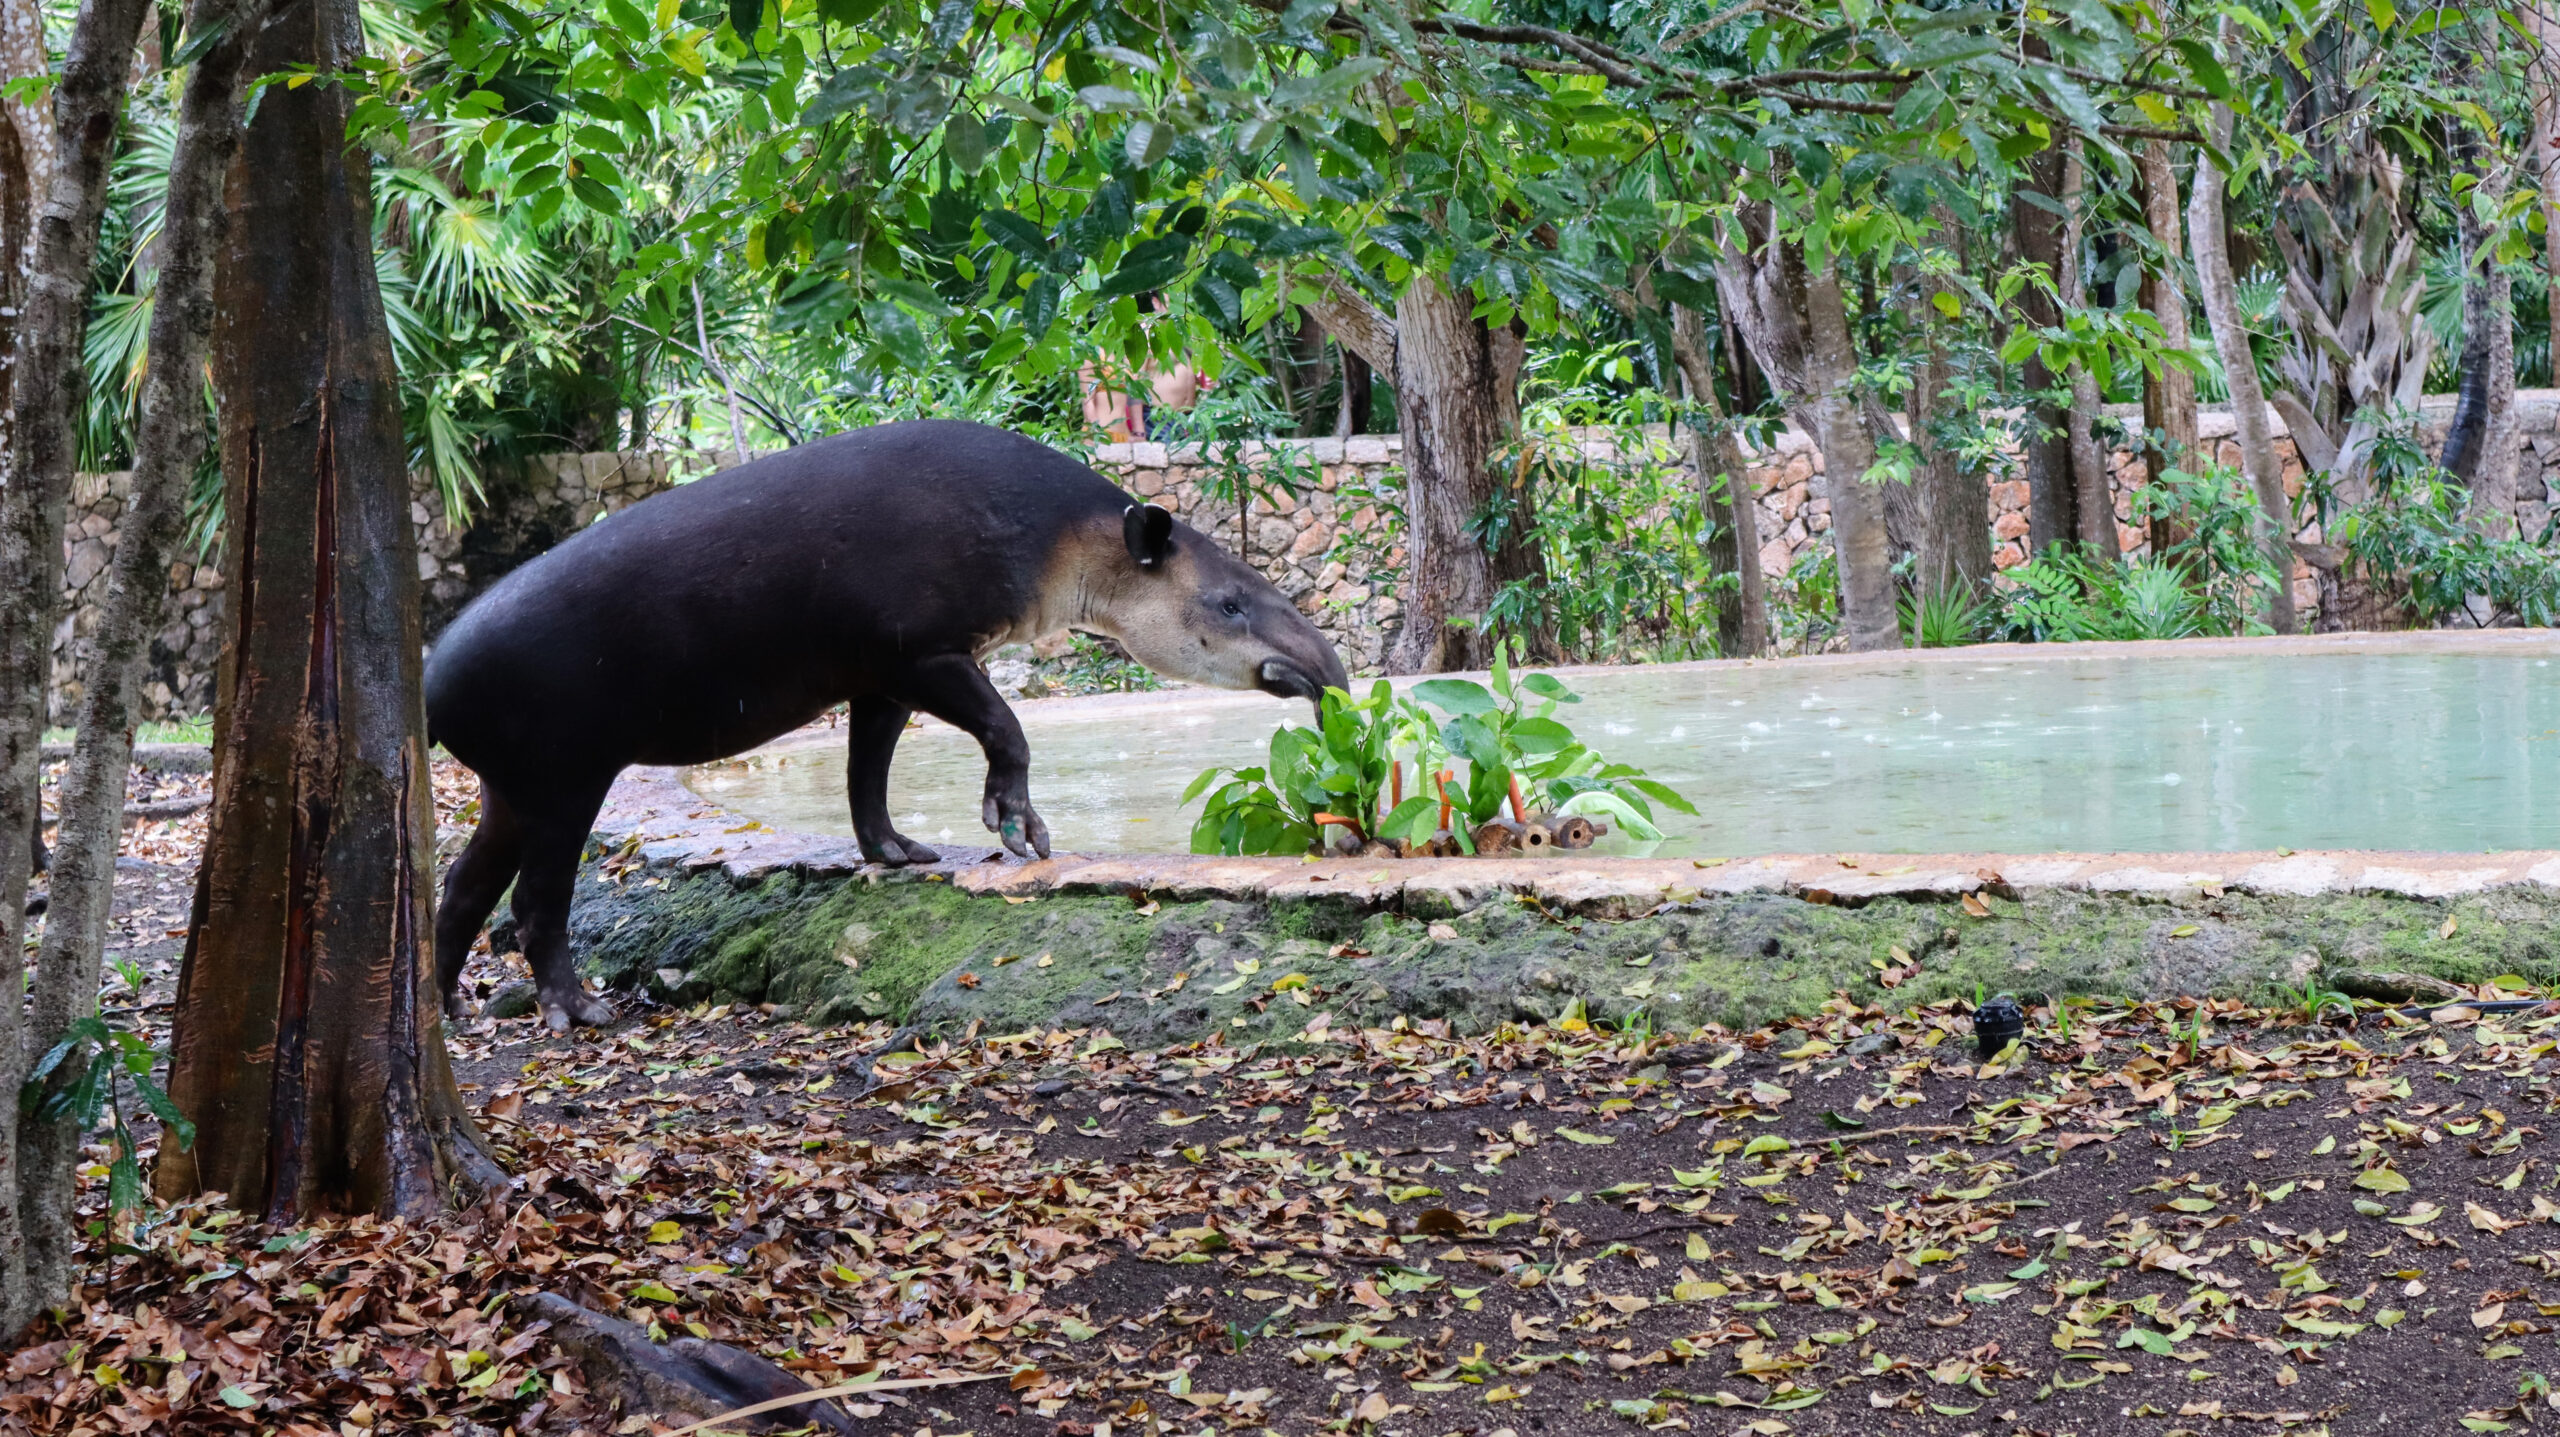 Grupo Xcaret fortalece la conservación de especies endémicas de la península de Yucatán con préstamo de Tapir (Tapirus bairdii) al Parque Zoológico y Botánico La Reina de Tizimín